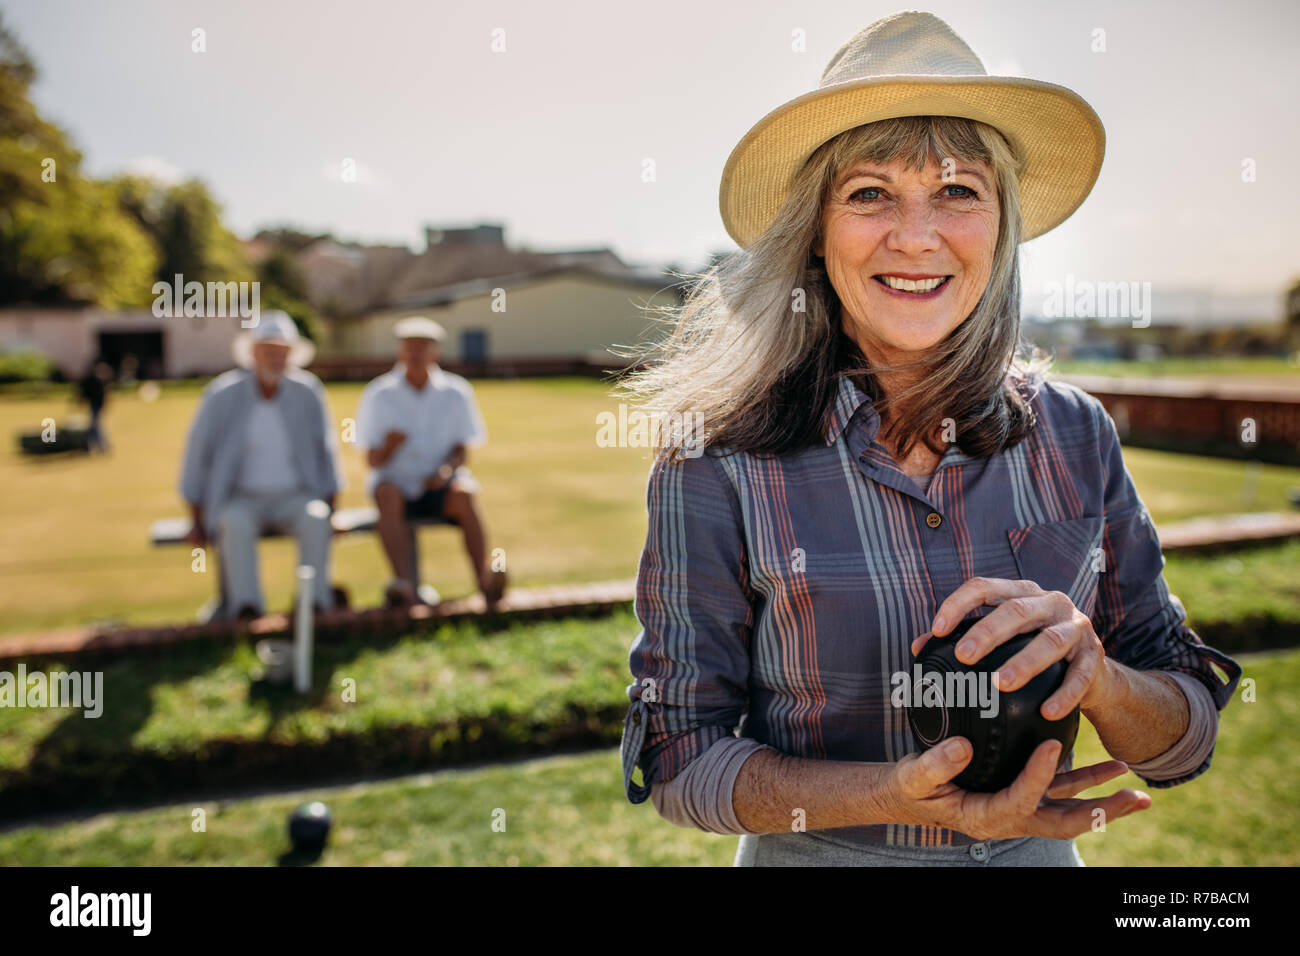 Lächelnde ältere Frau hat sich in einen Rasen mit einem Boule. Fröhliche Frau Boccia in einem Park, während Ihre männlichen Freunde im Bac Sitzen Stockfoto